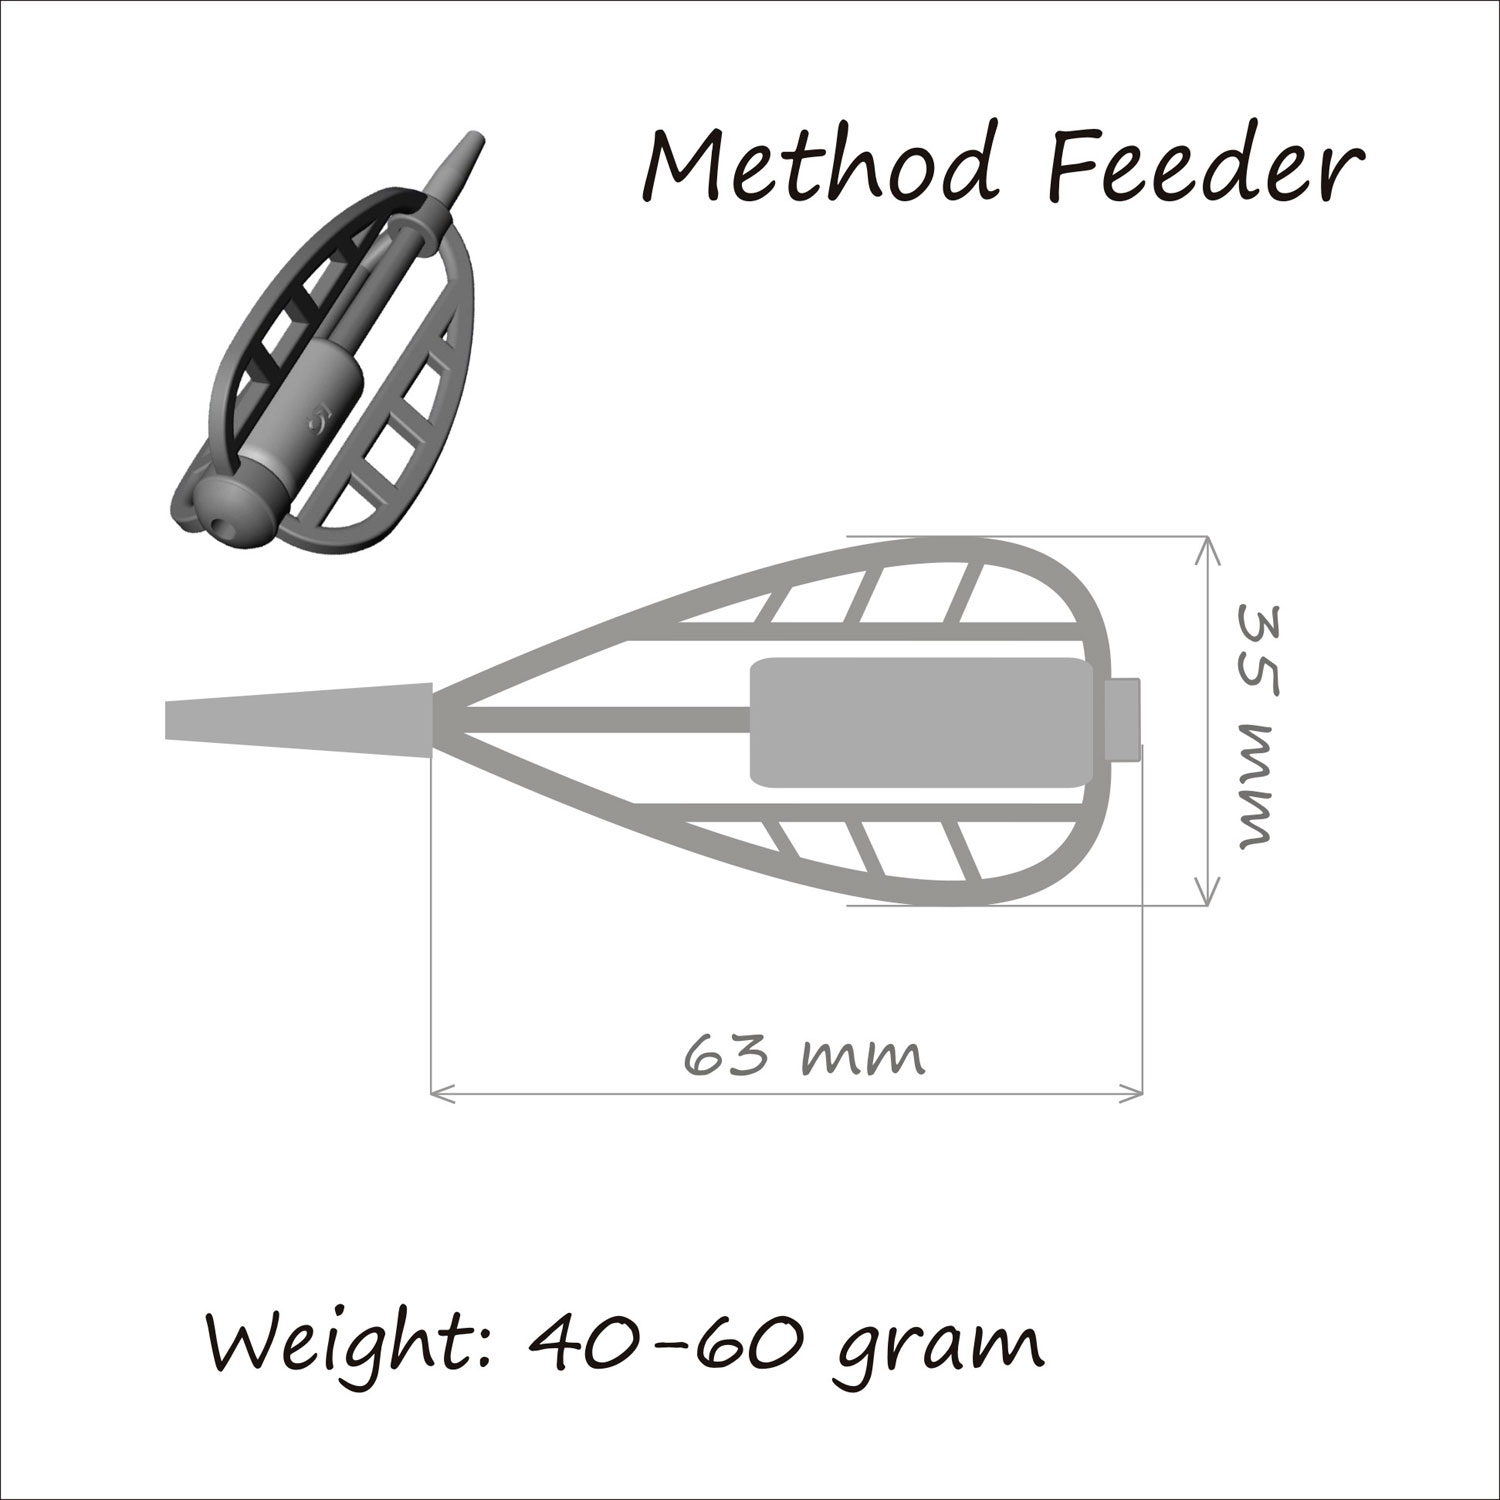 Кормушка ORANGE Method Feeder, 50 гр, в уп. 1 шт